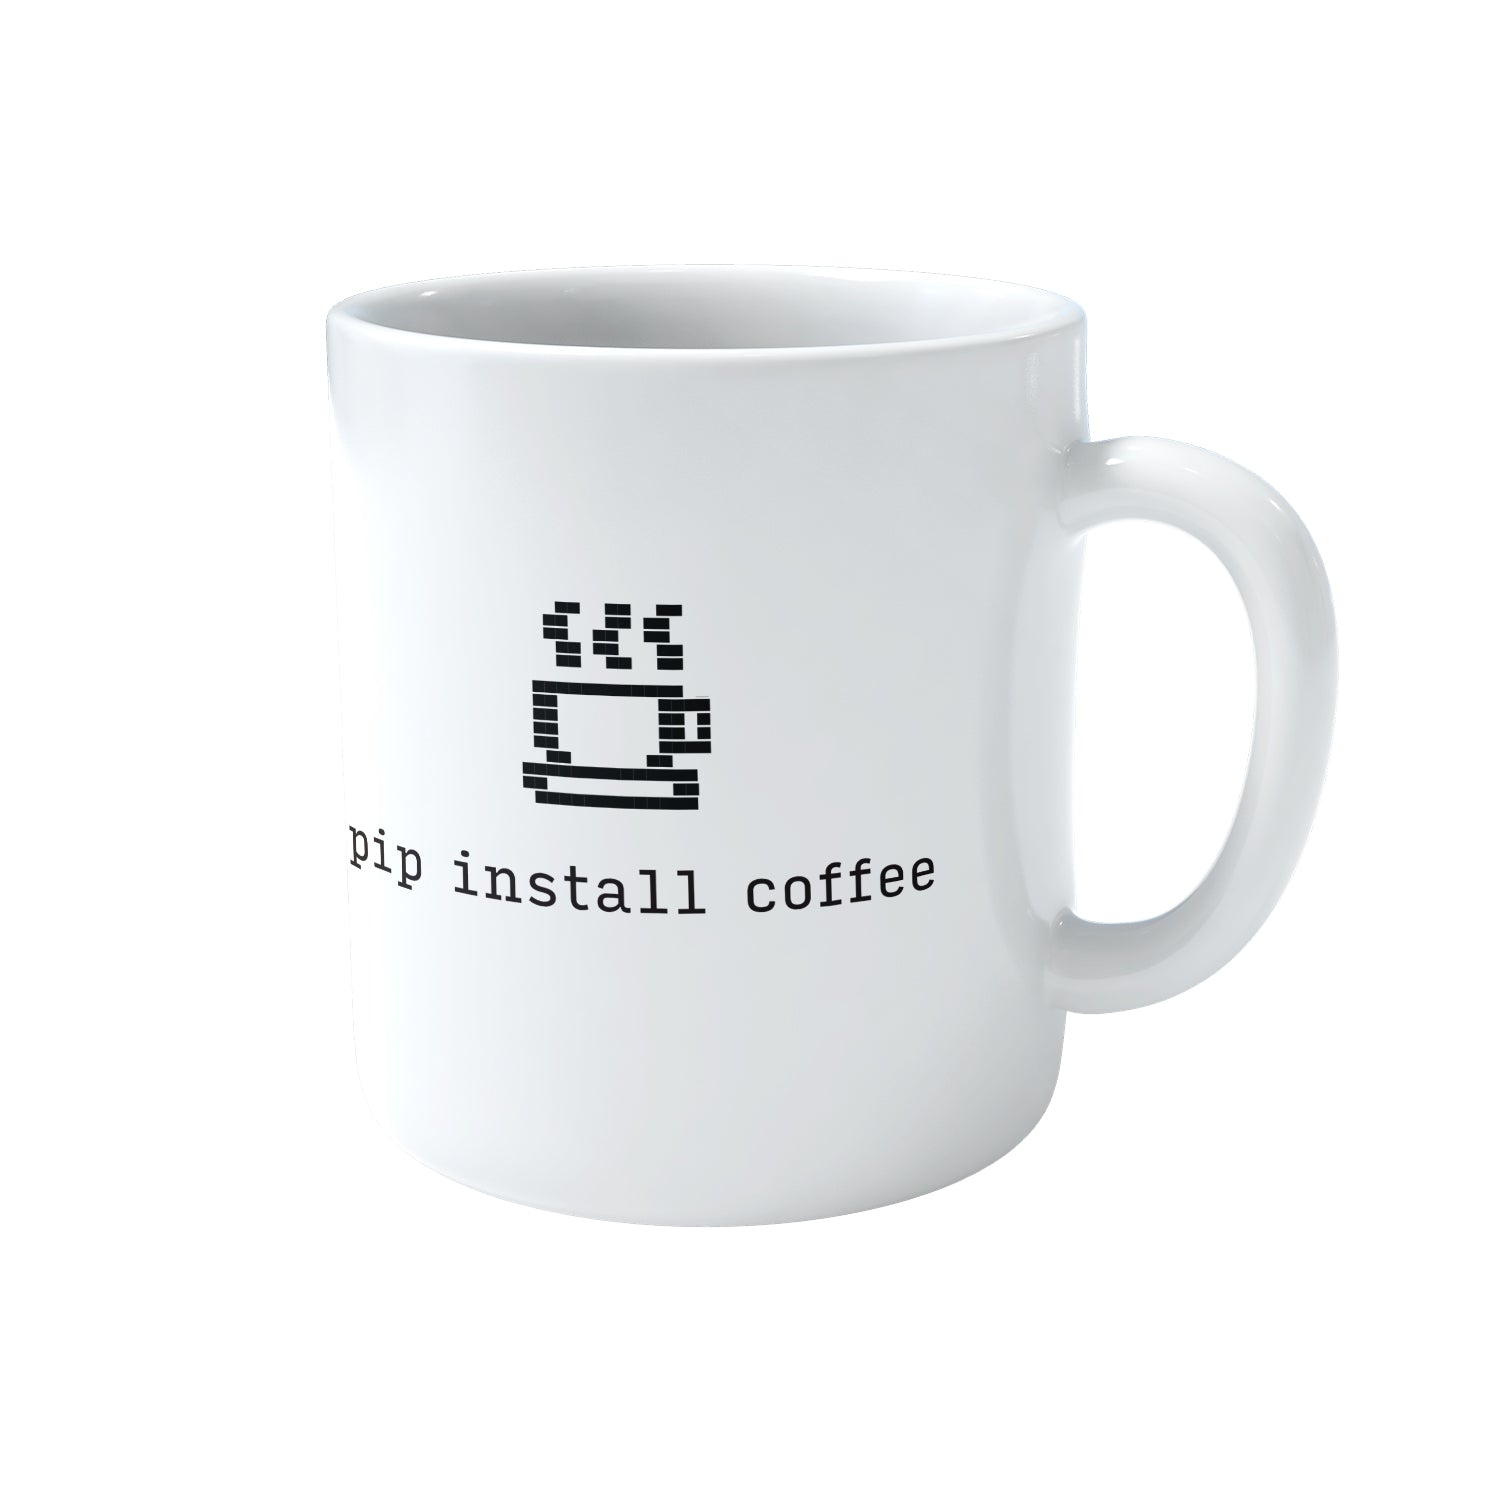 Pip Install Coffee Mug